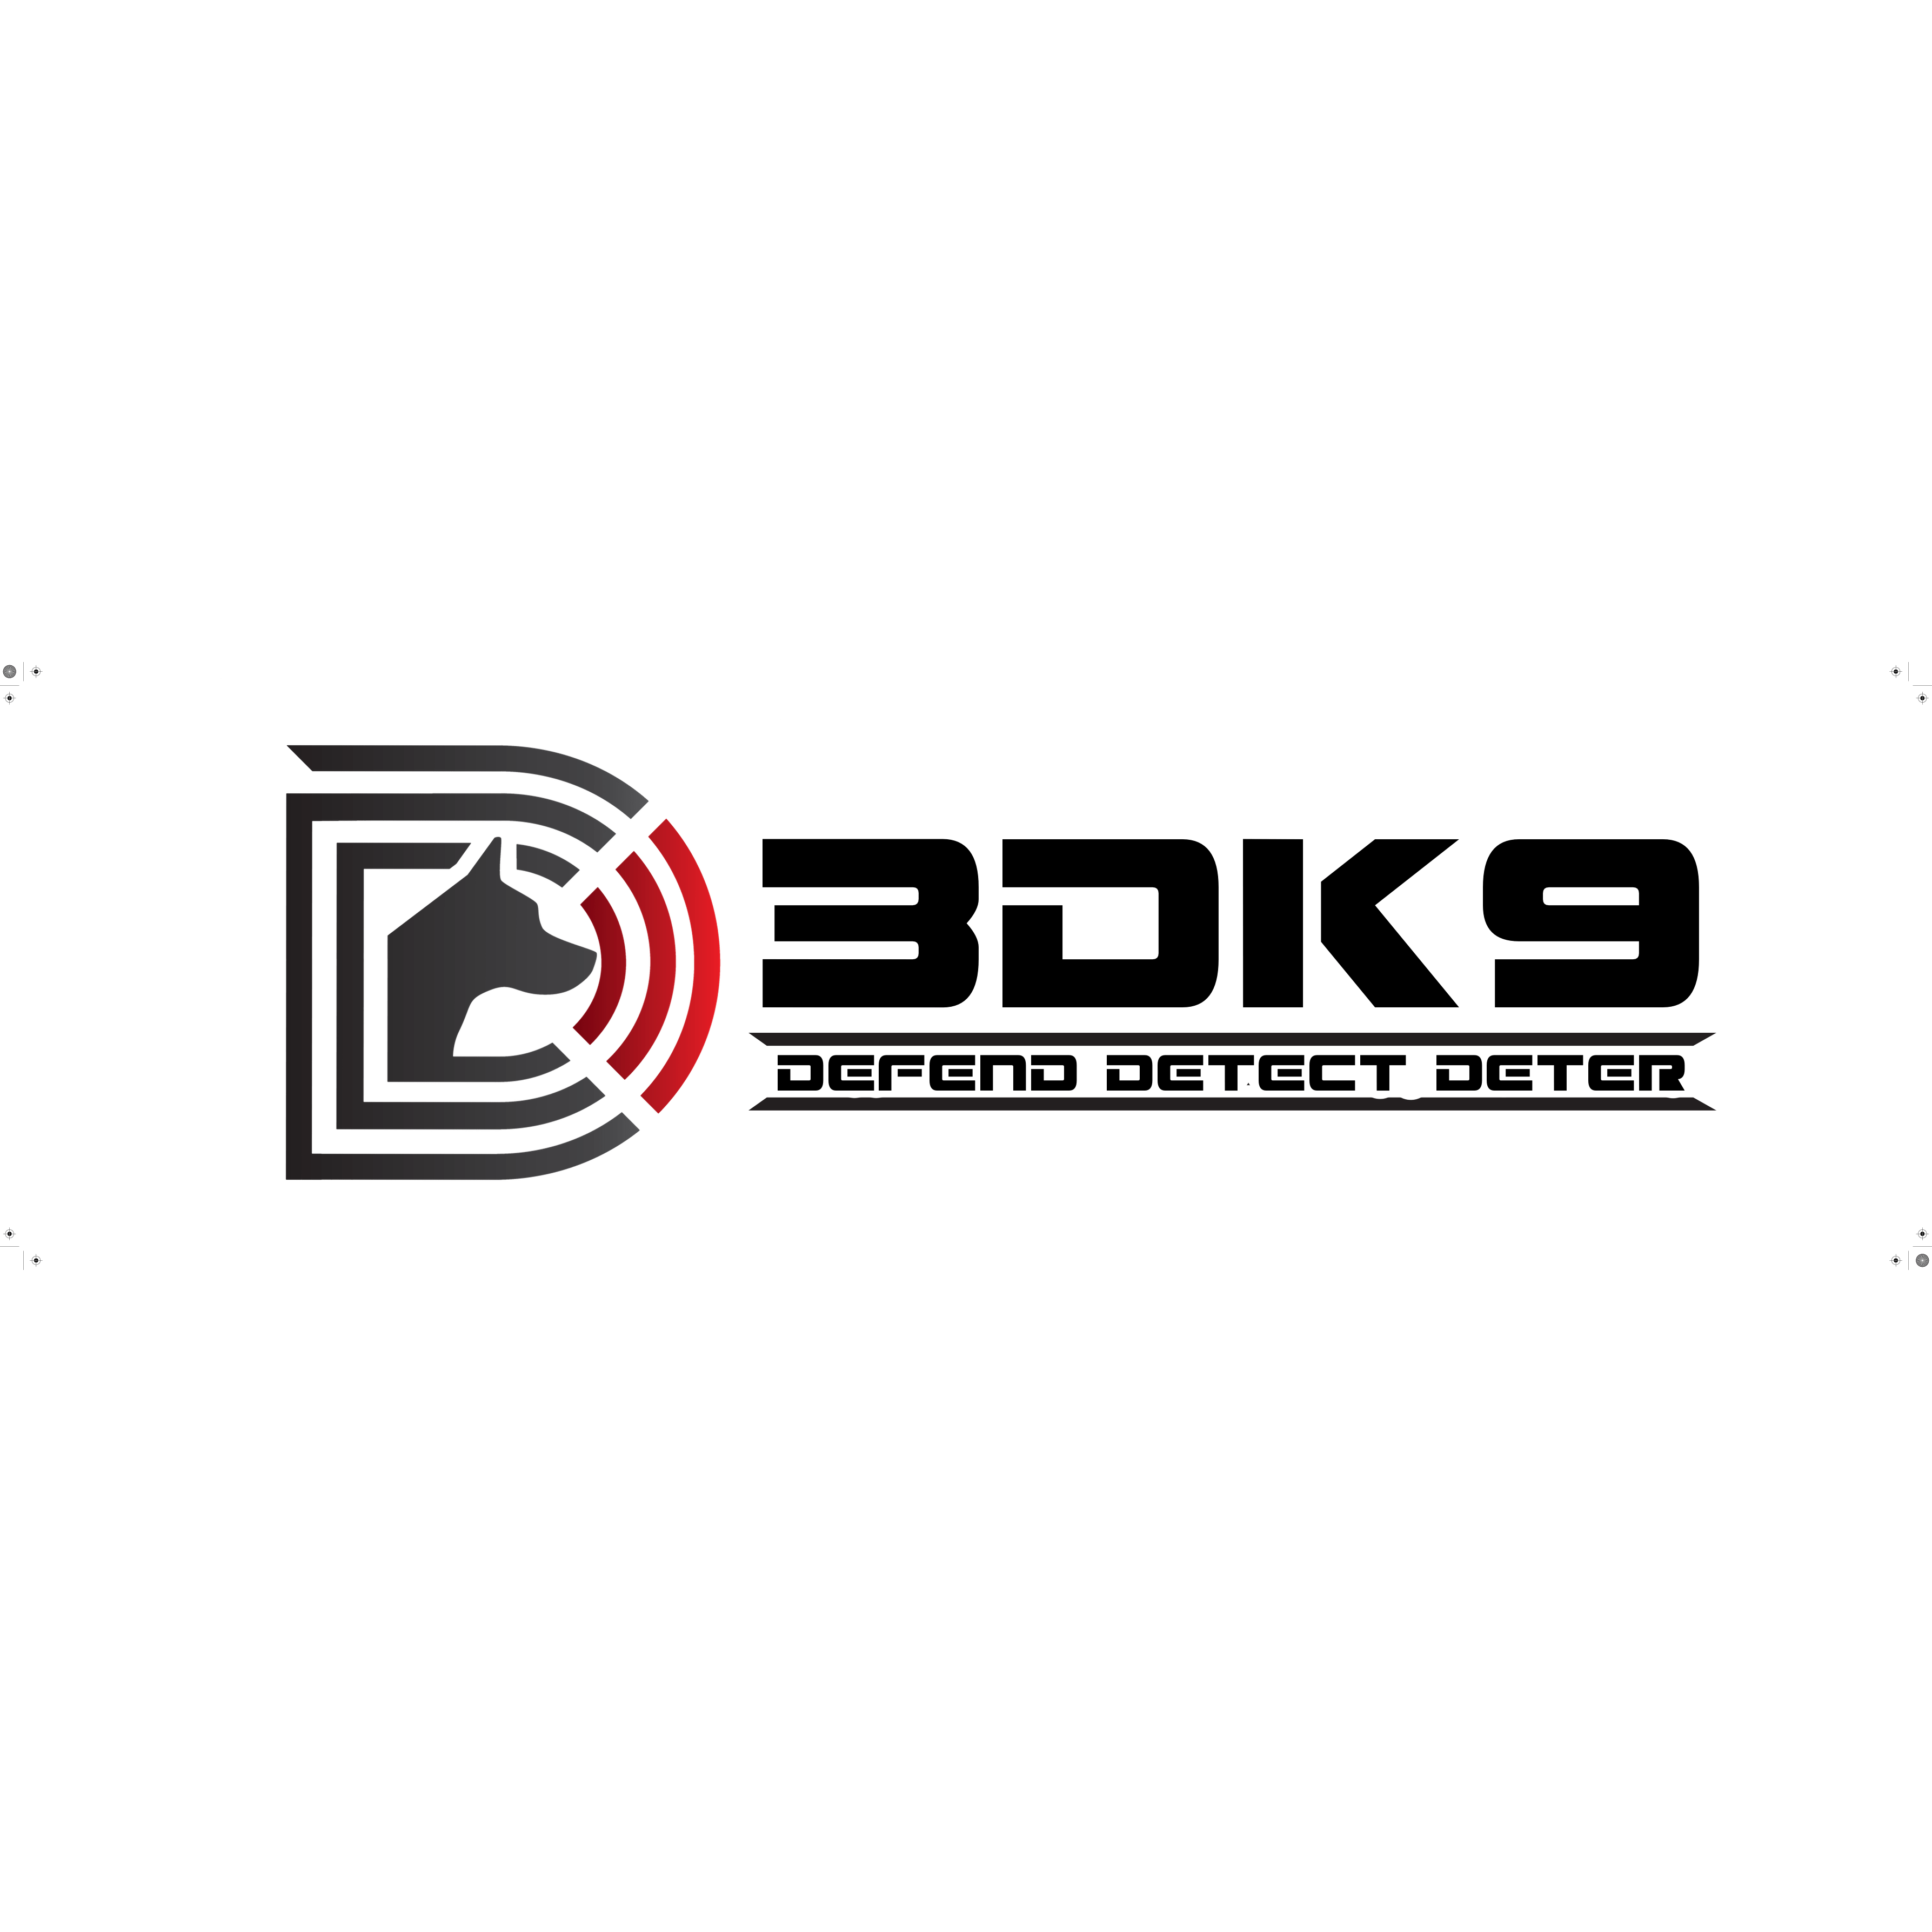 3DK9 LLC